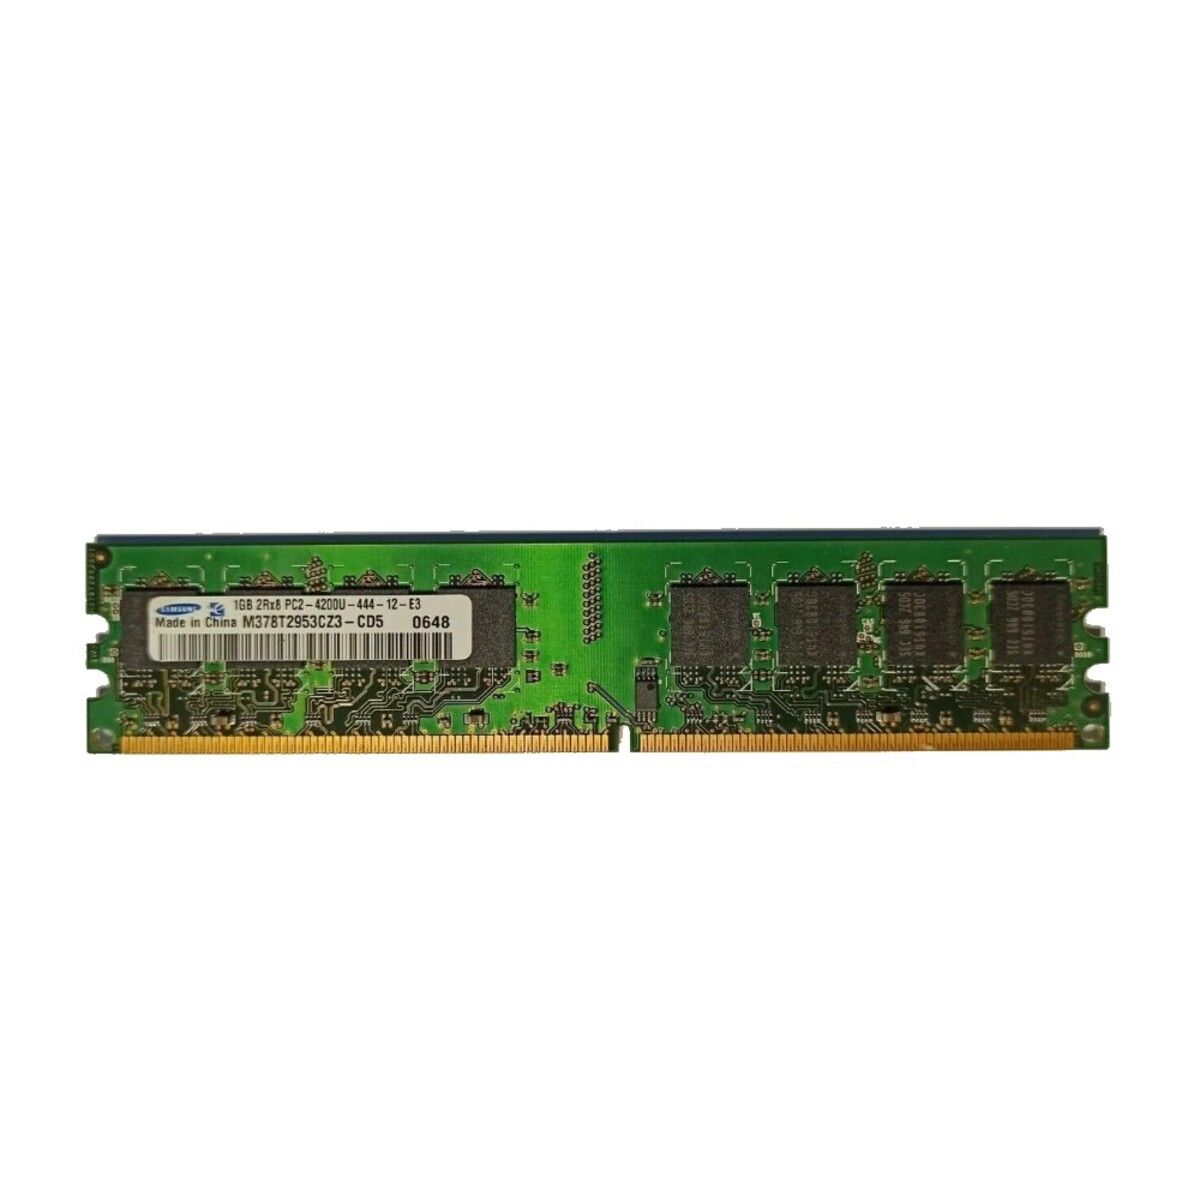 Samsung 1 GB DDR2 2Rx8 PC2 4200U 444 12 E3 Ram